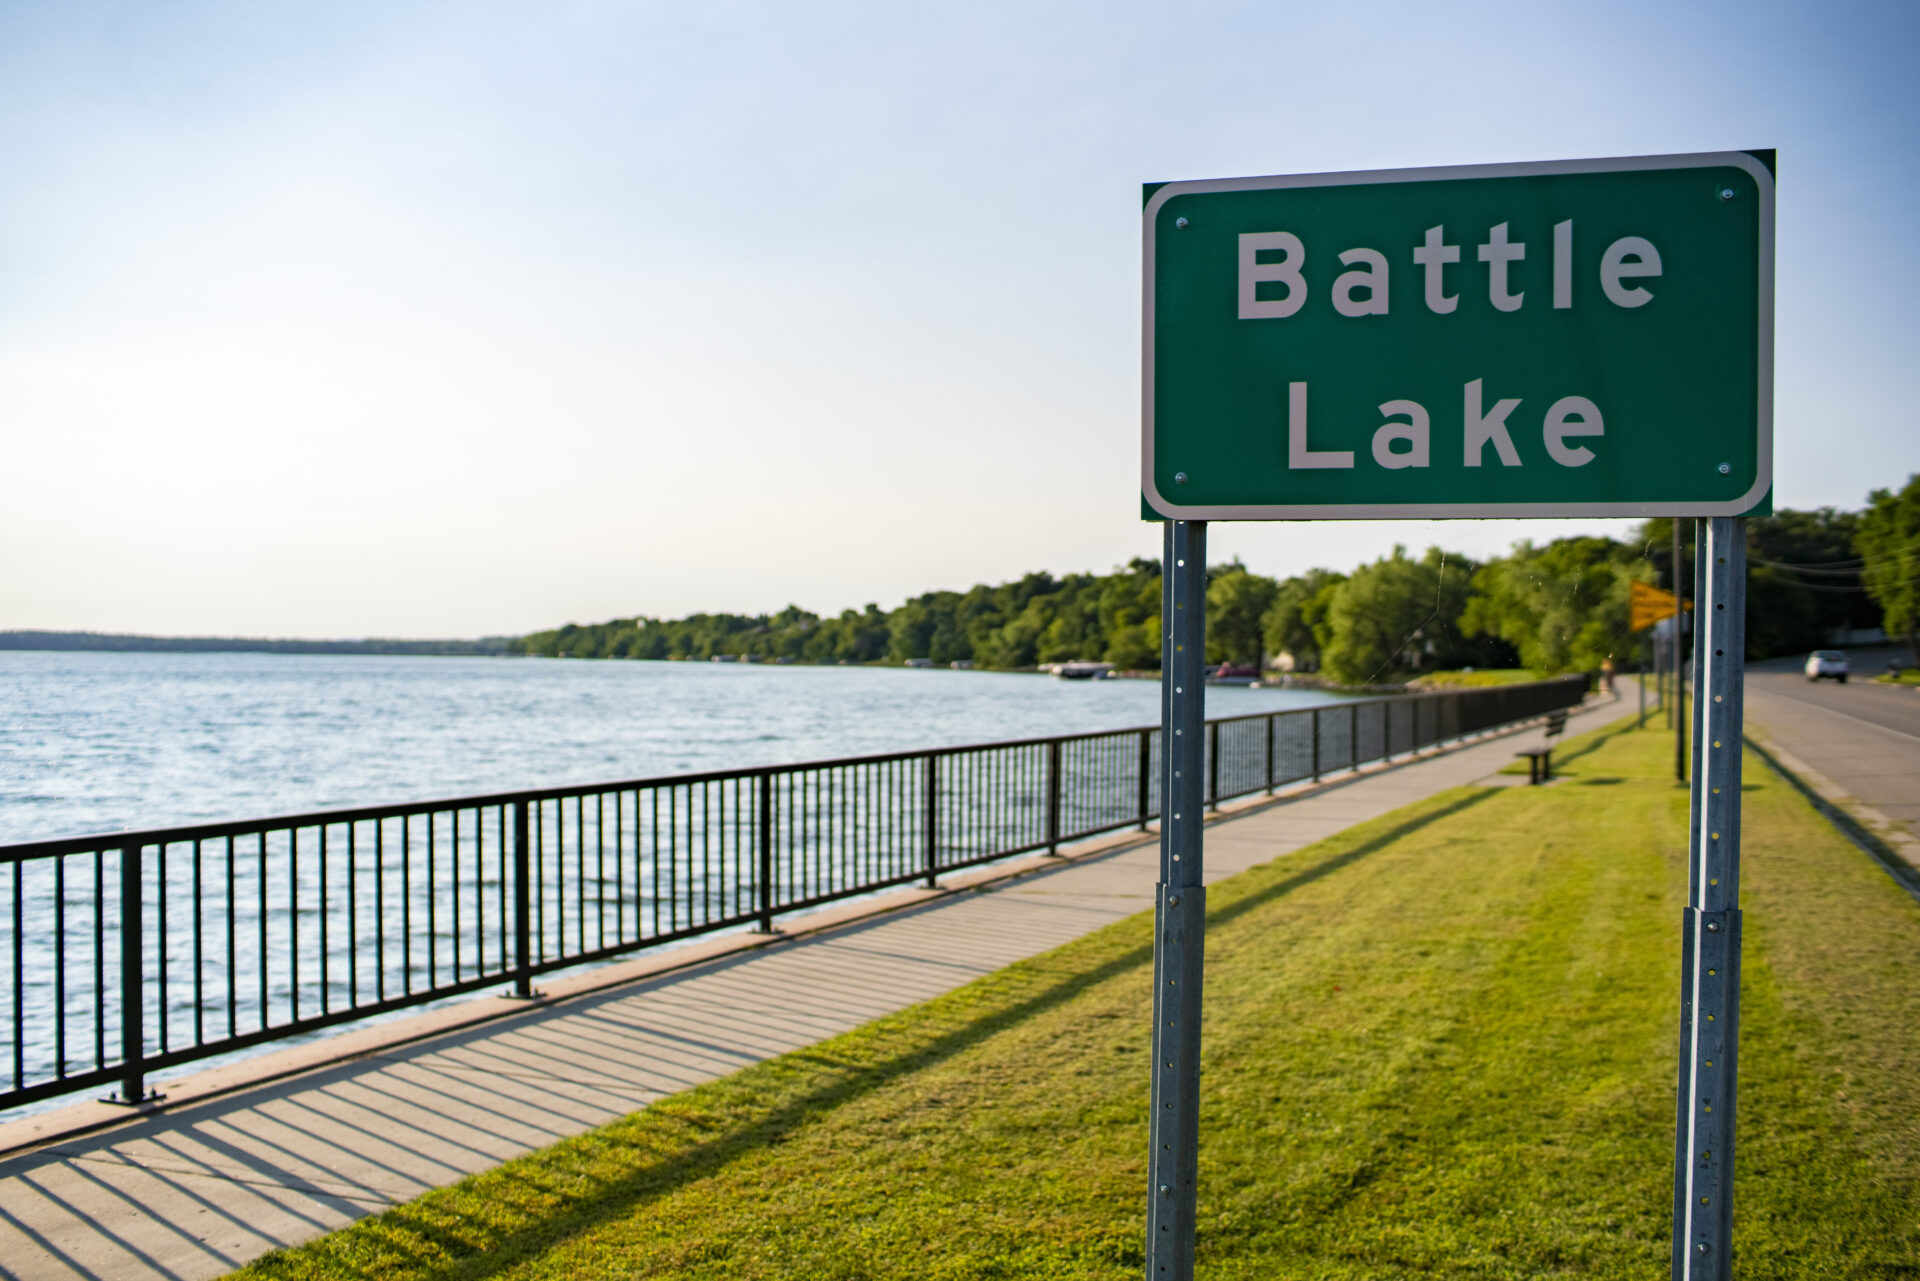 Battle Lake trail and lake